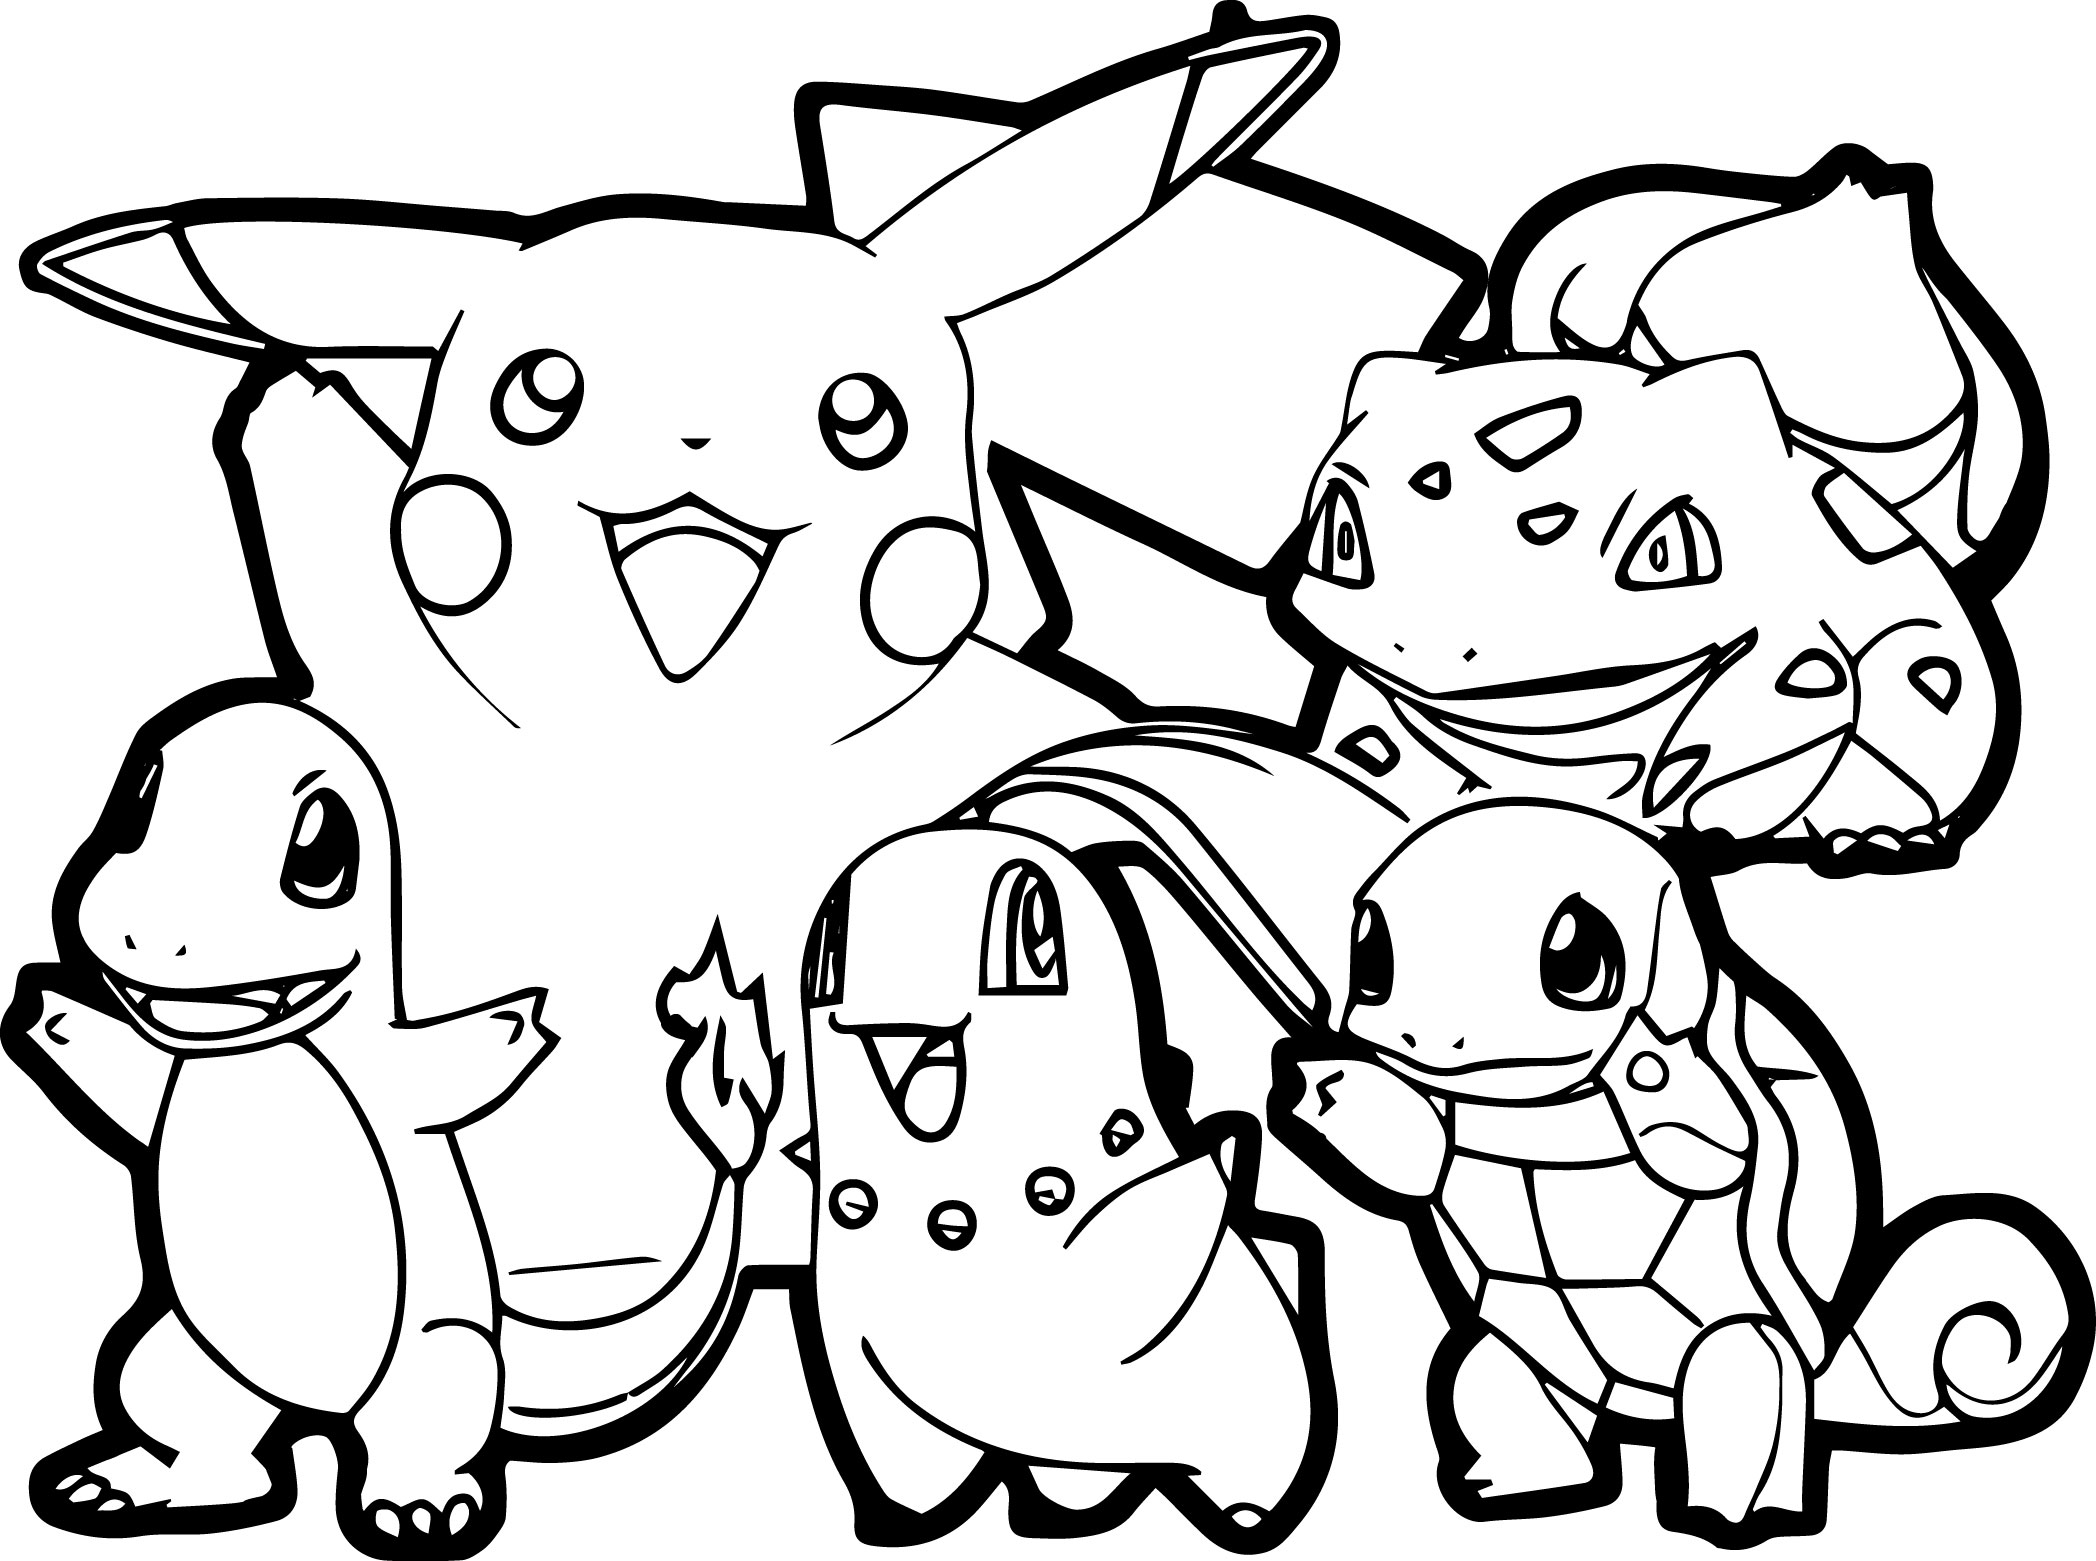 Un coloriage simple de Pikachu et de ses amis, avec des traits très épais